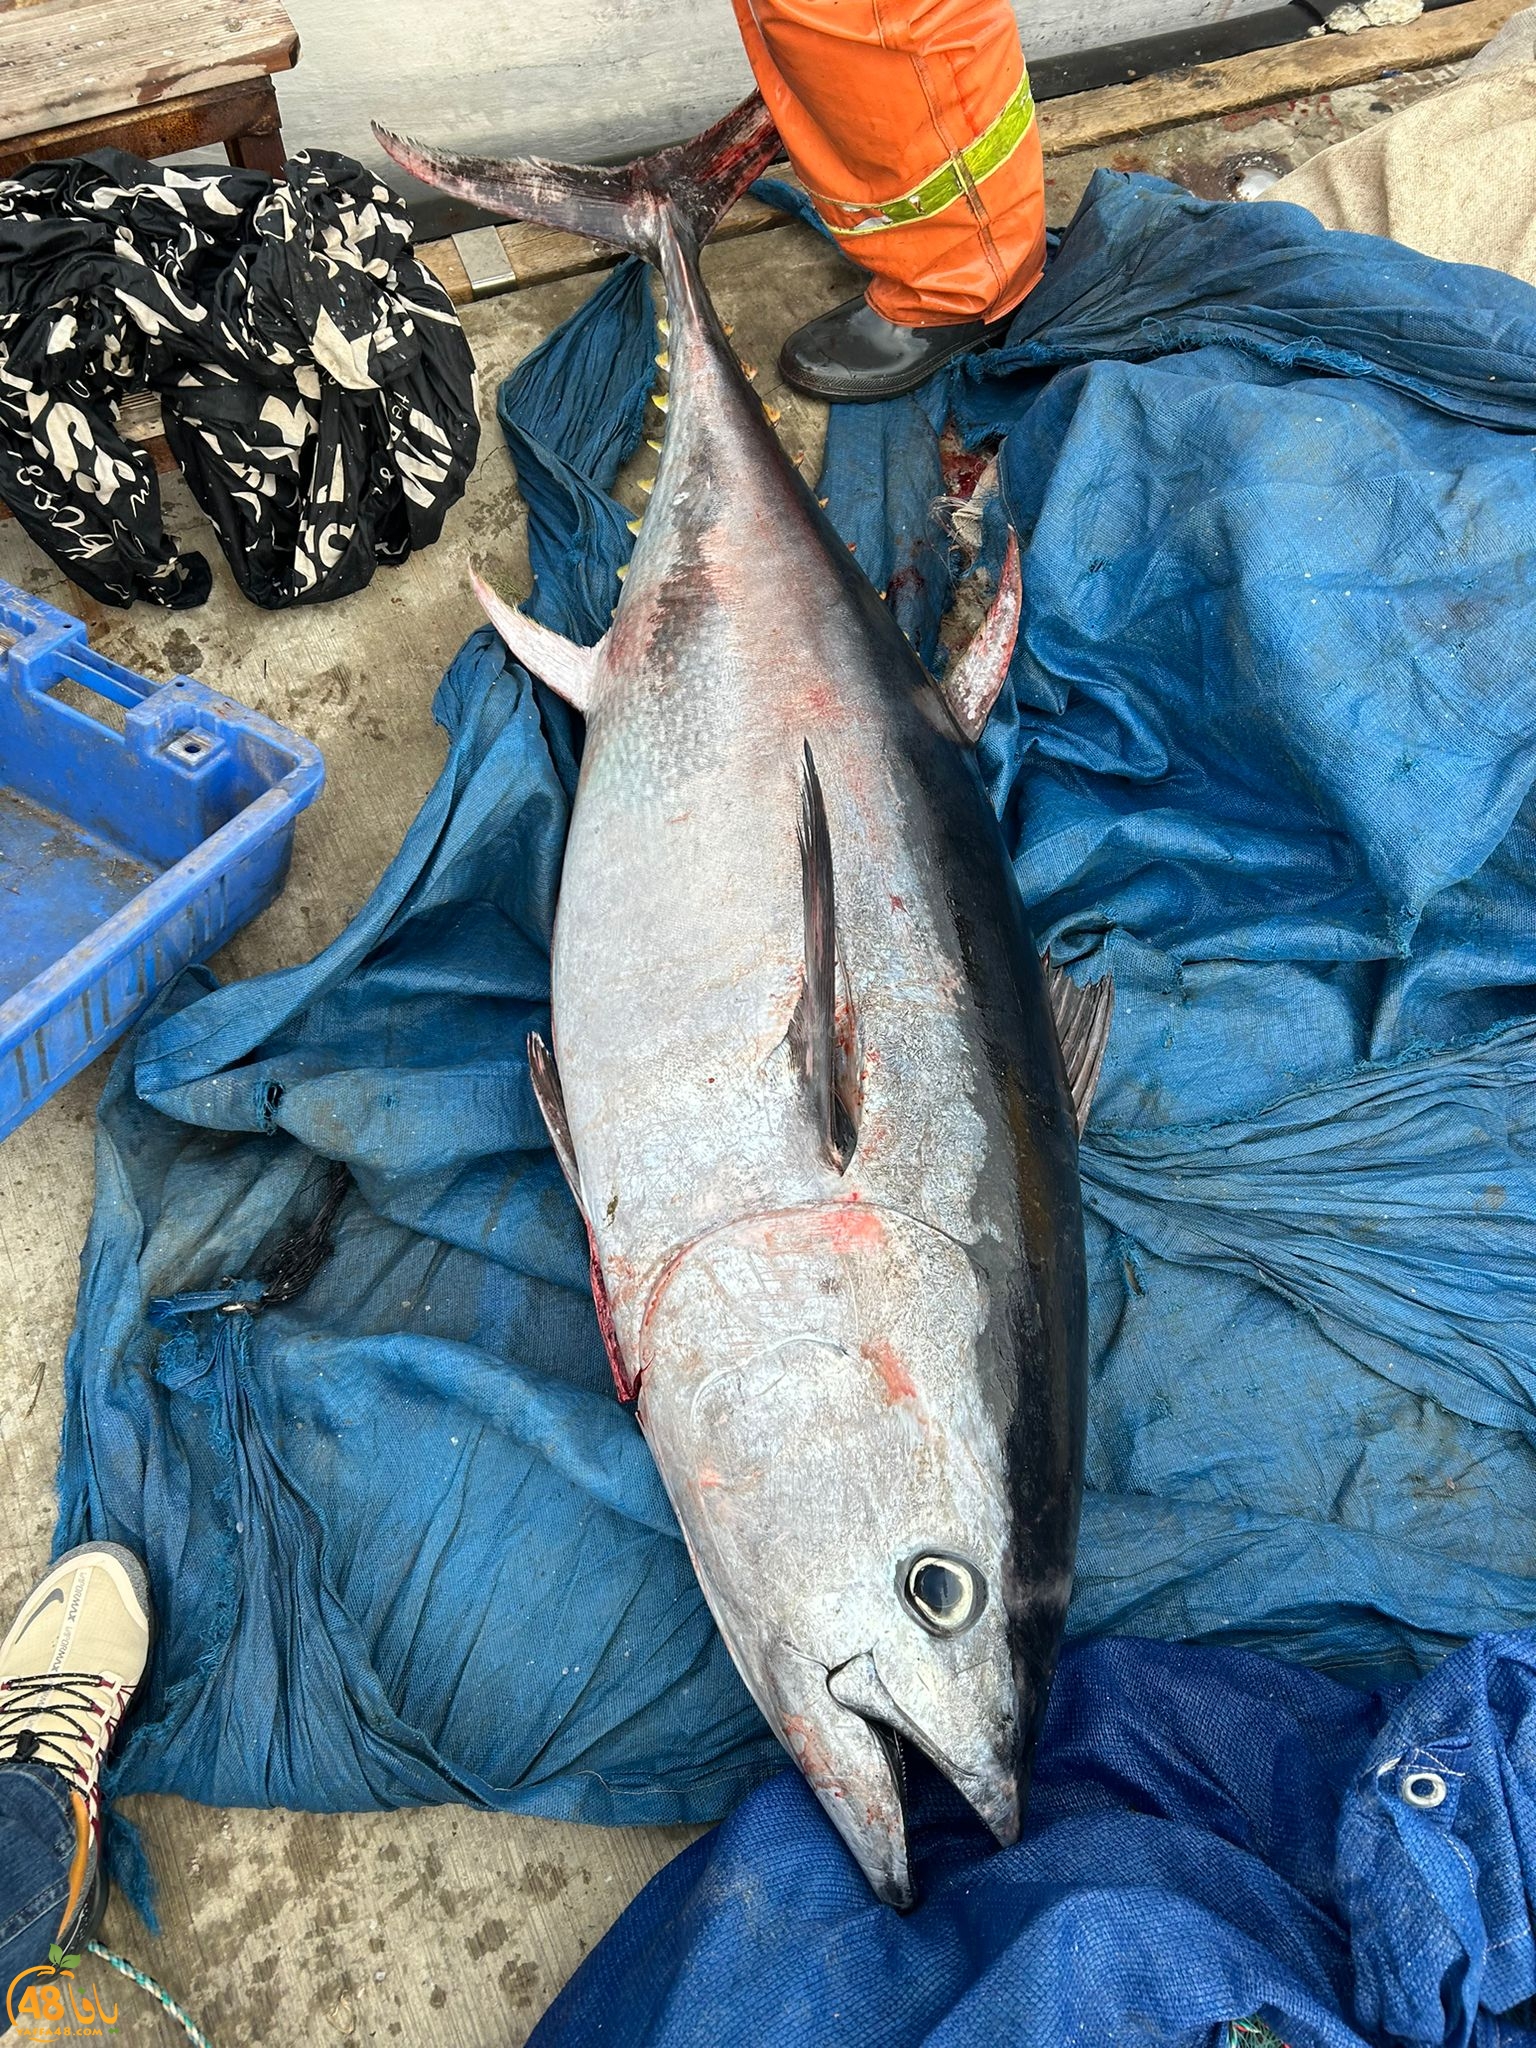  فيديو: اصطياد سمكة تونة كبيرة قبالة شواطئ يافا 